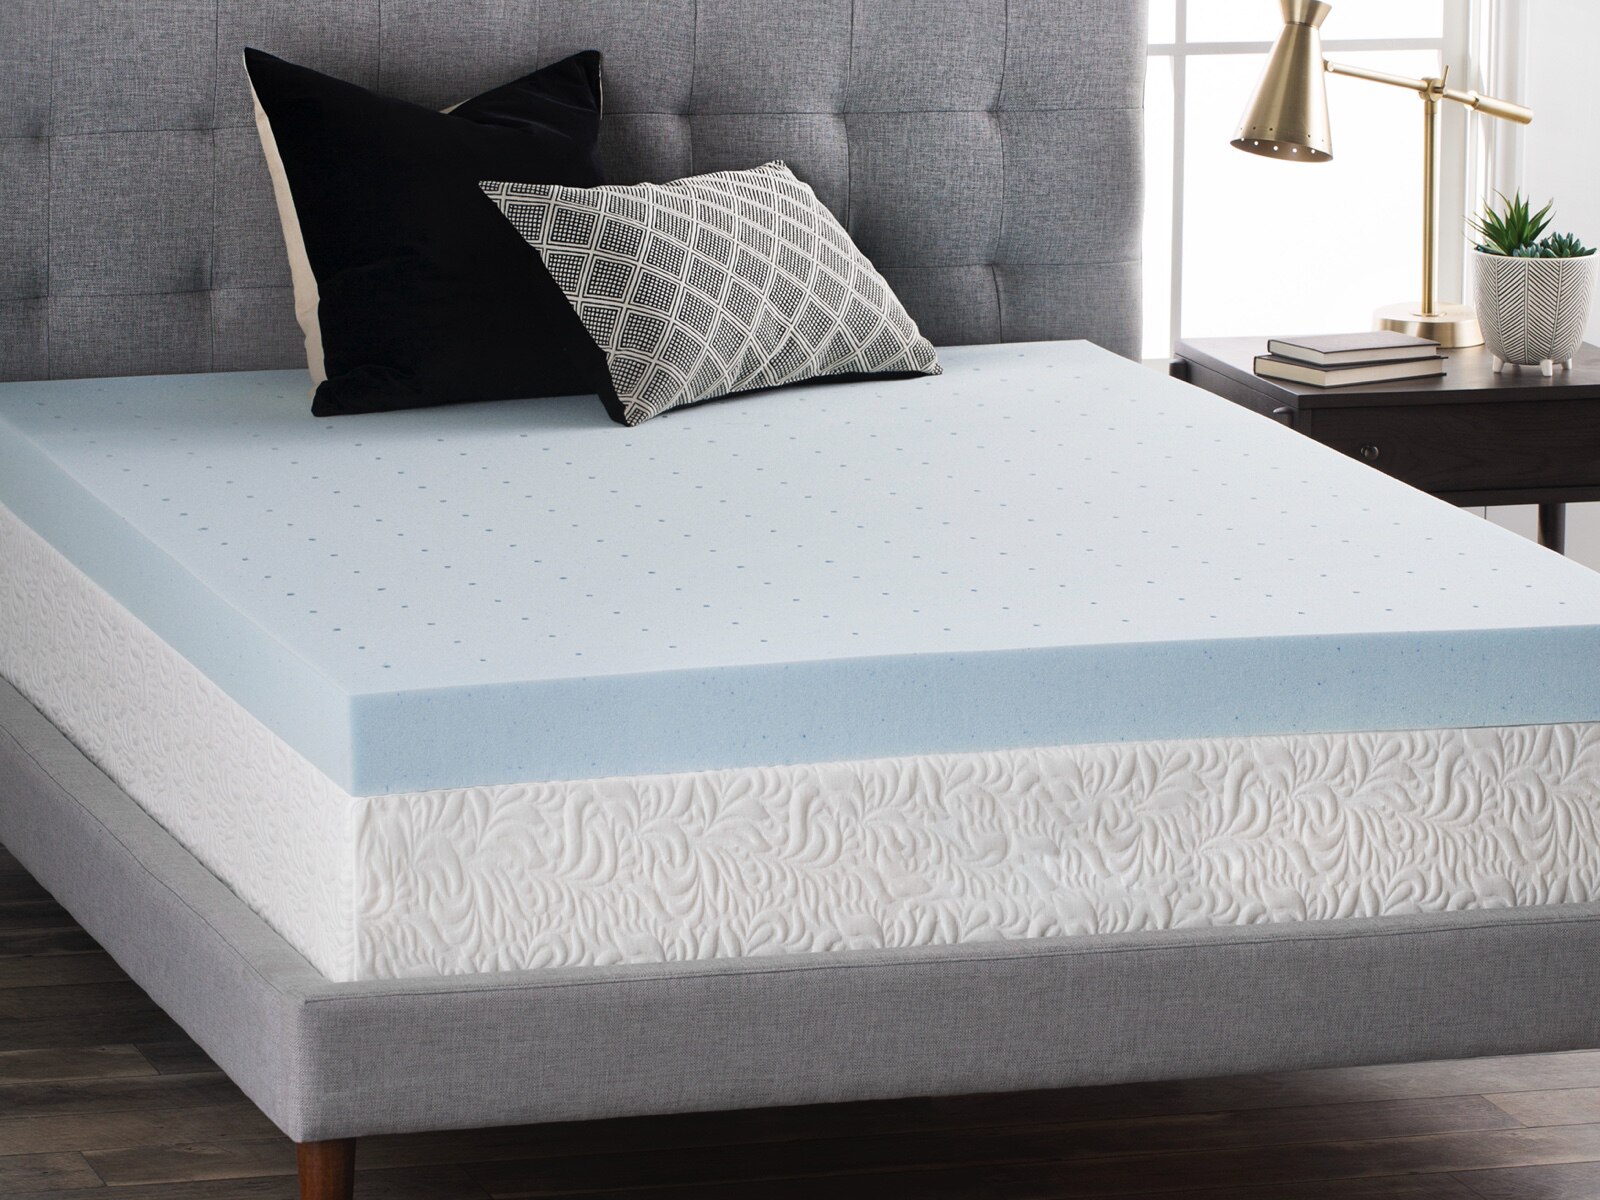 lucid 4 gel memory foam mattress topper queen